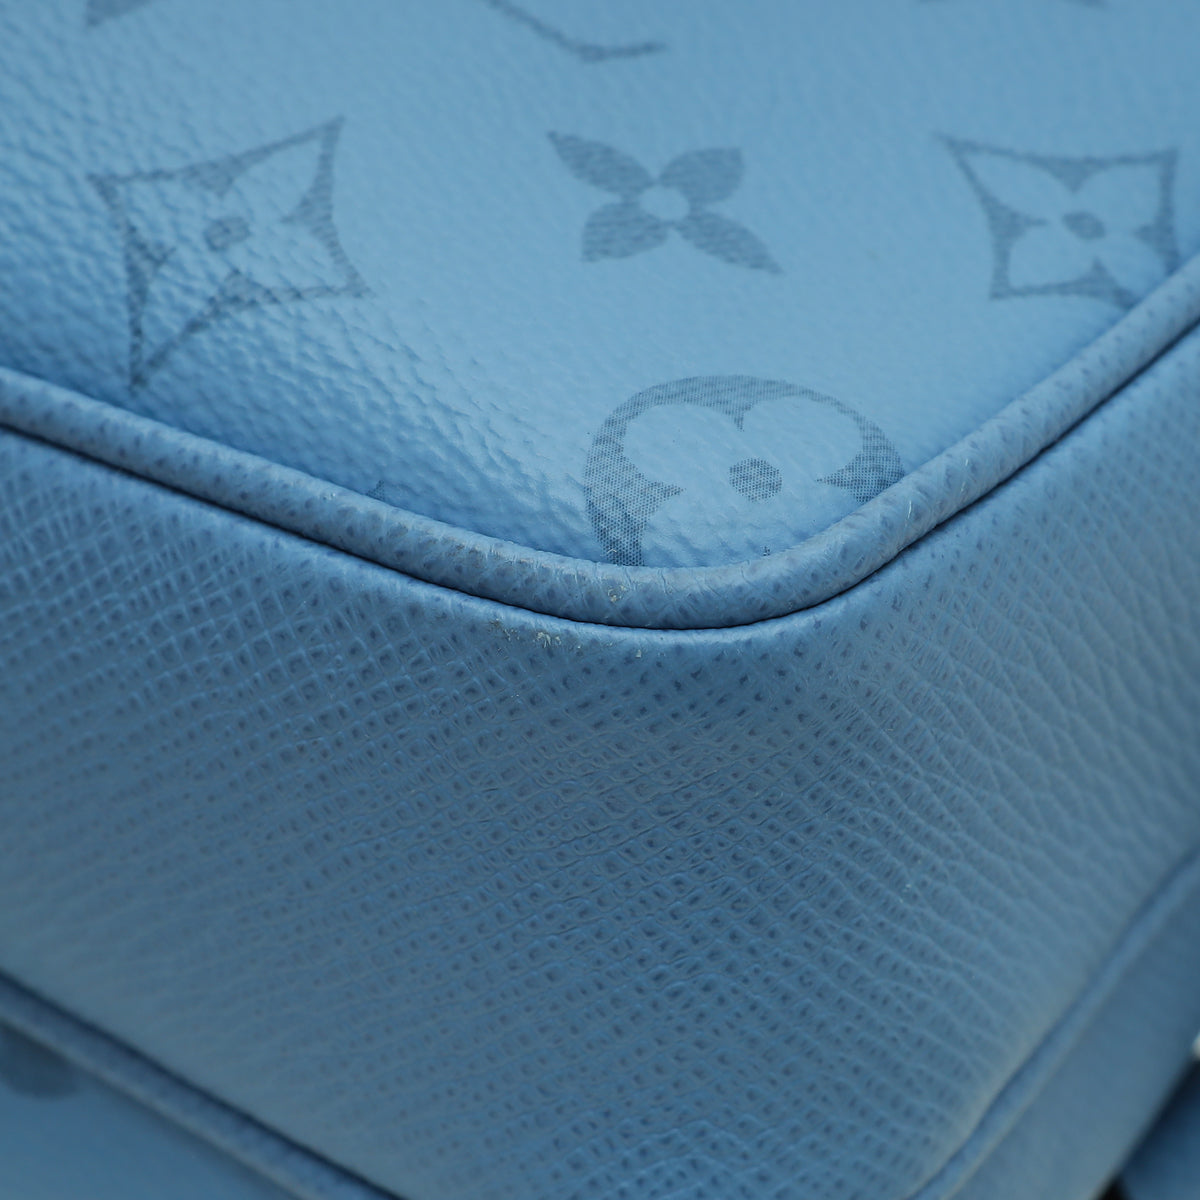 Louis Vuitton Light Blue Taigarama Outdoor Messenger Bag – The Closet